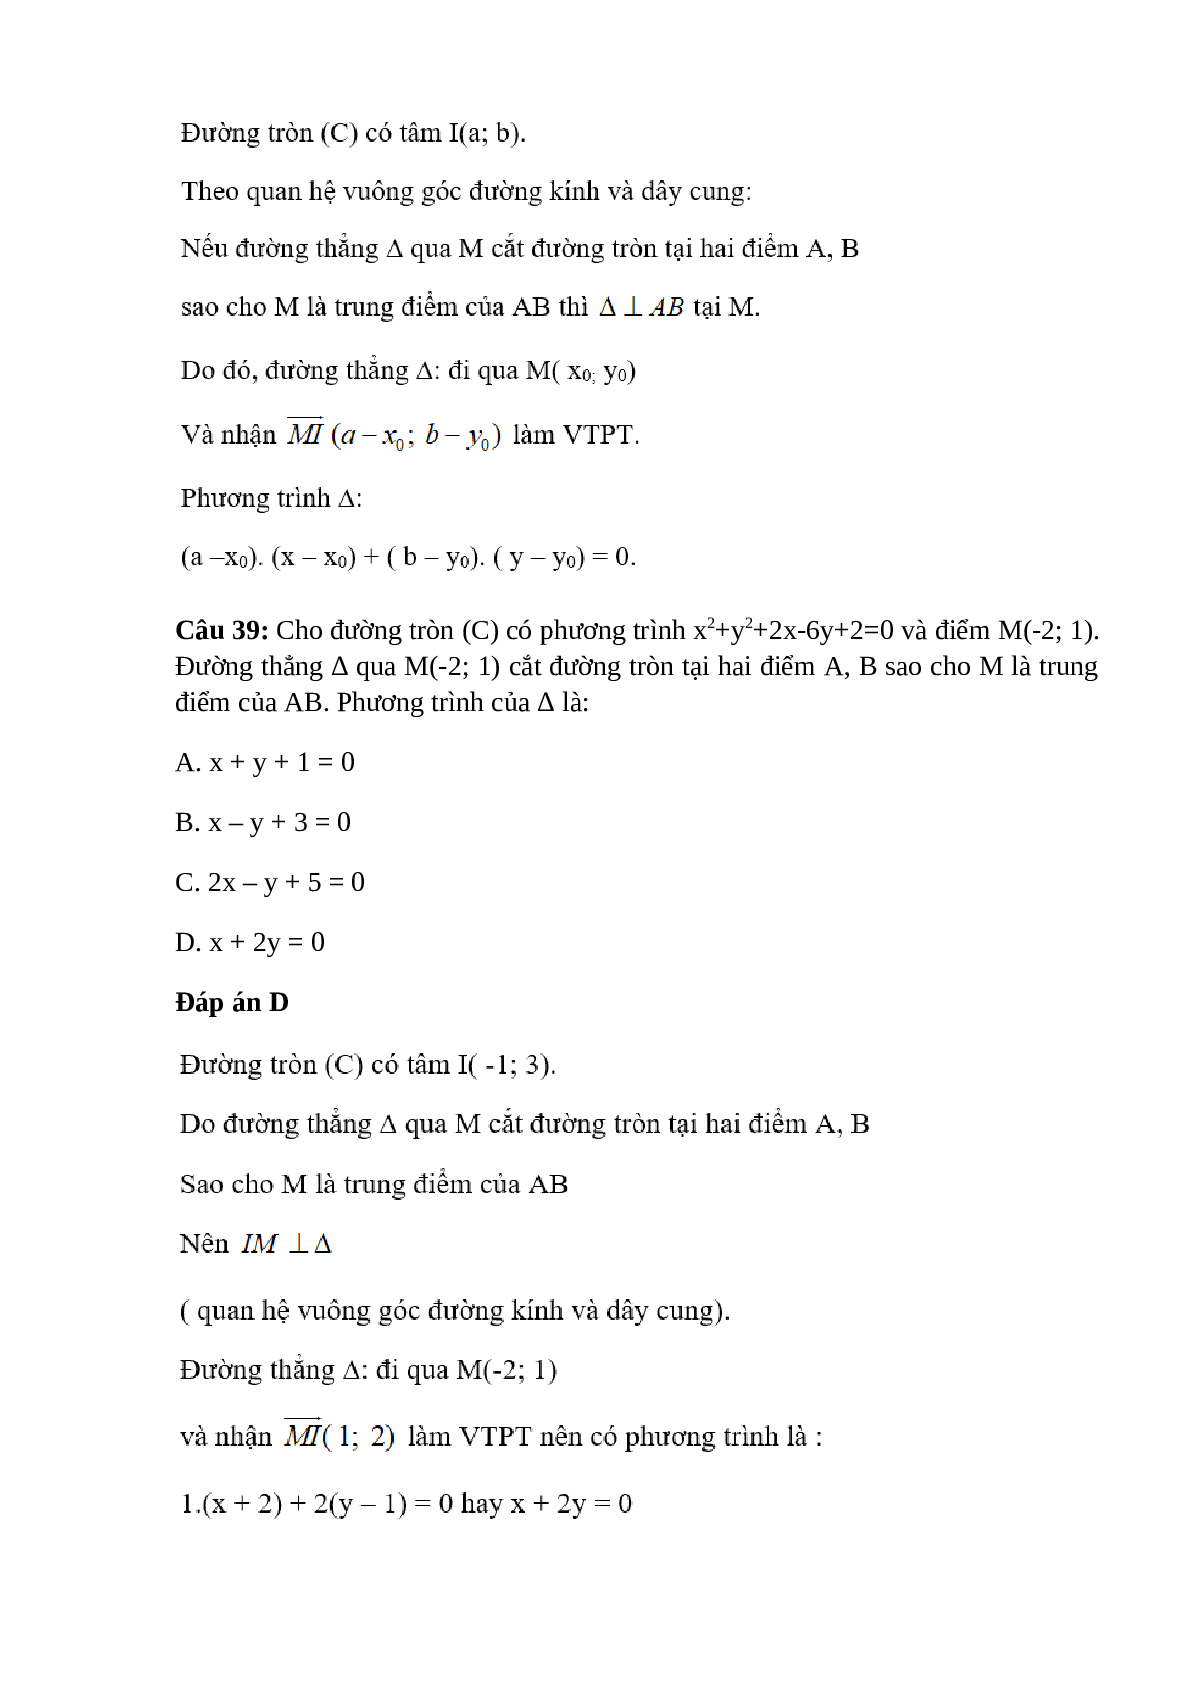 Trắc nghiệm Phương trình đường tròn (phần 3) có đáp án – Toán lớp 10 (trang 6)